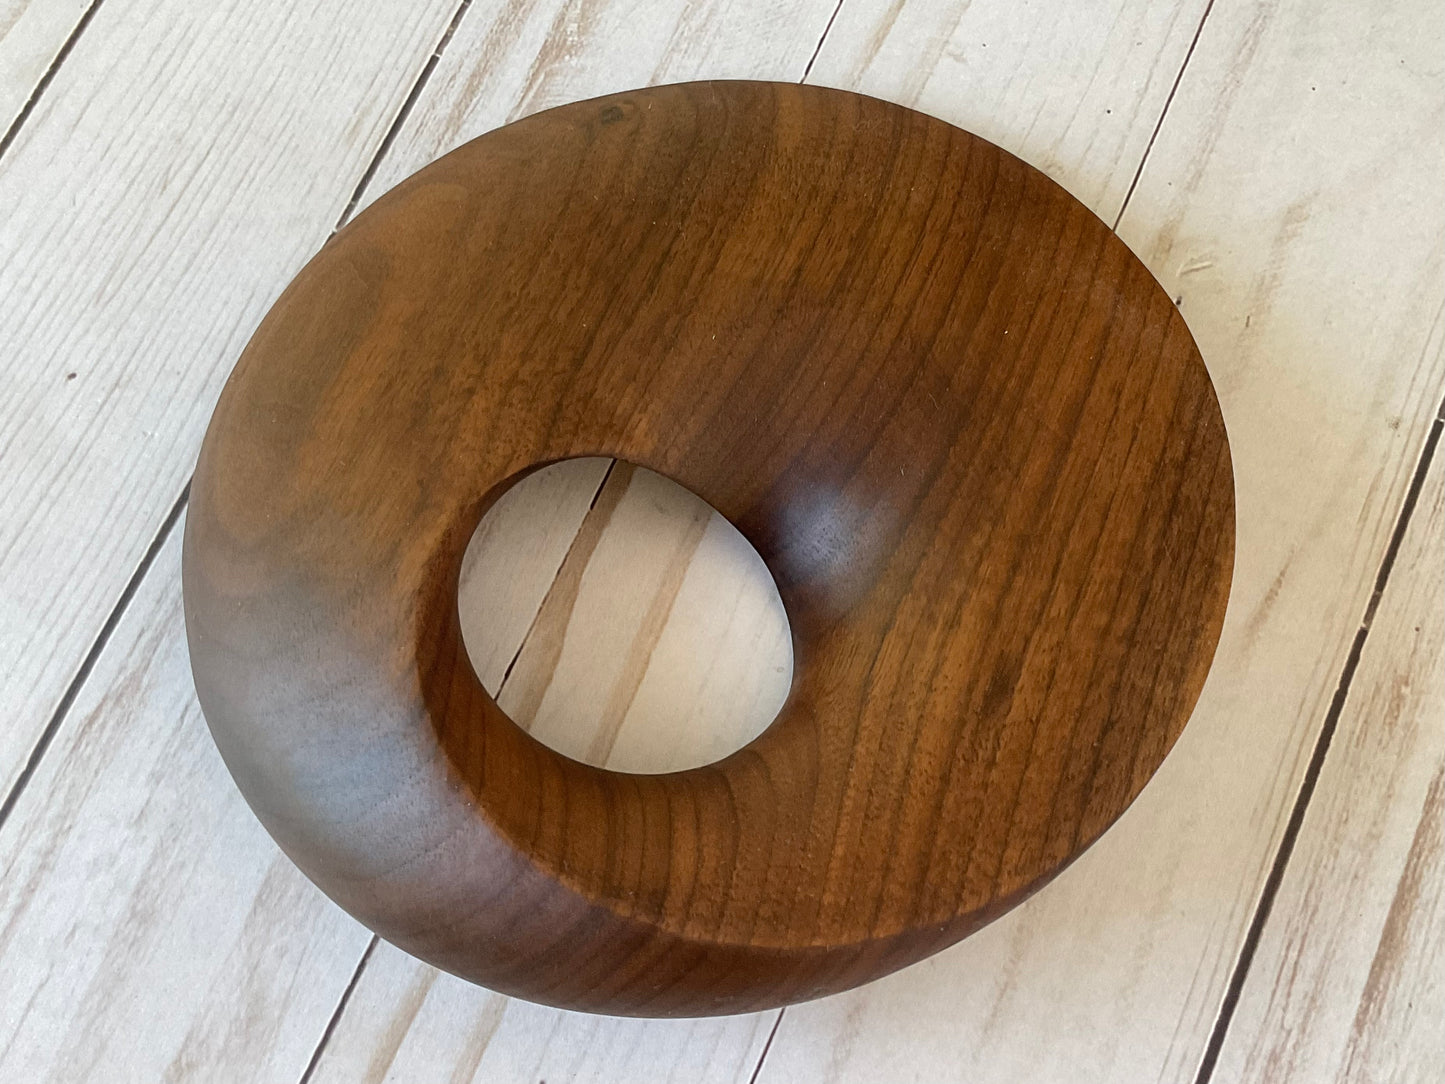 Möbius Strip Wooden Sculpture, Walnut Wood, 7"